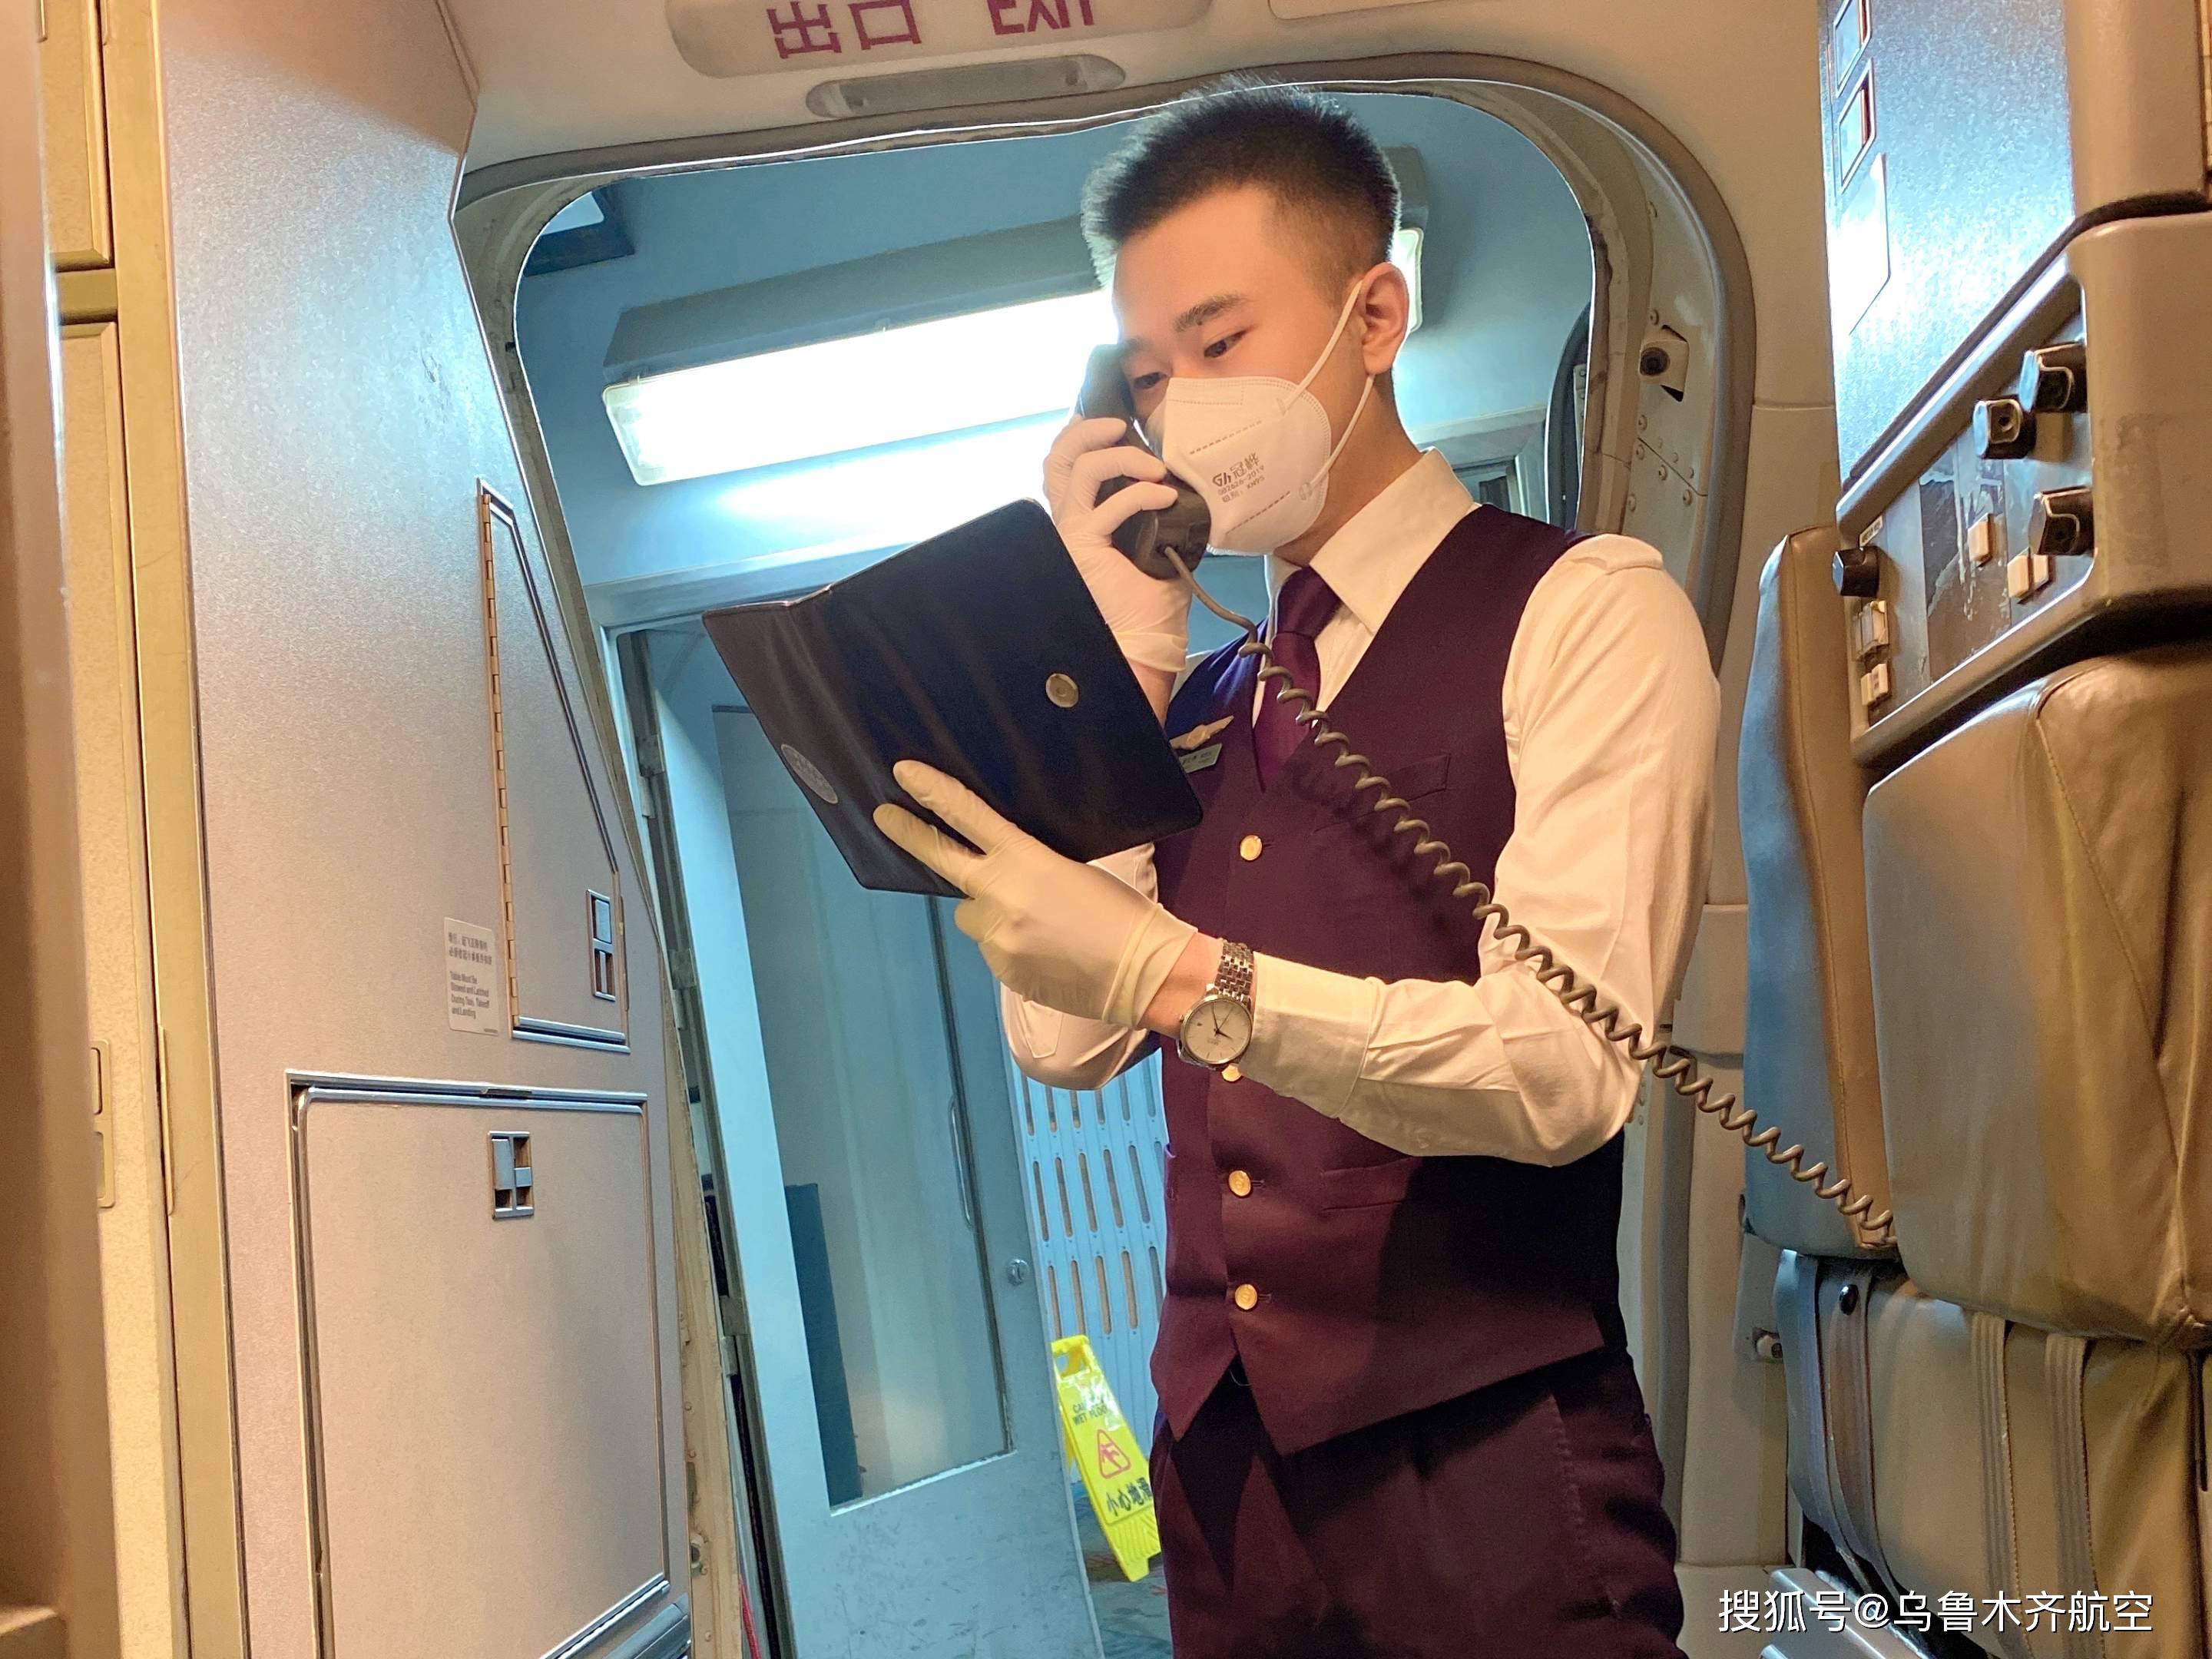 乌鲁木齐航空乘务员潘文博跟旅客们一起过年也别有一番滋味